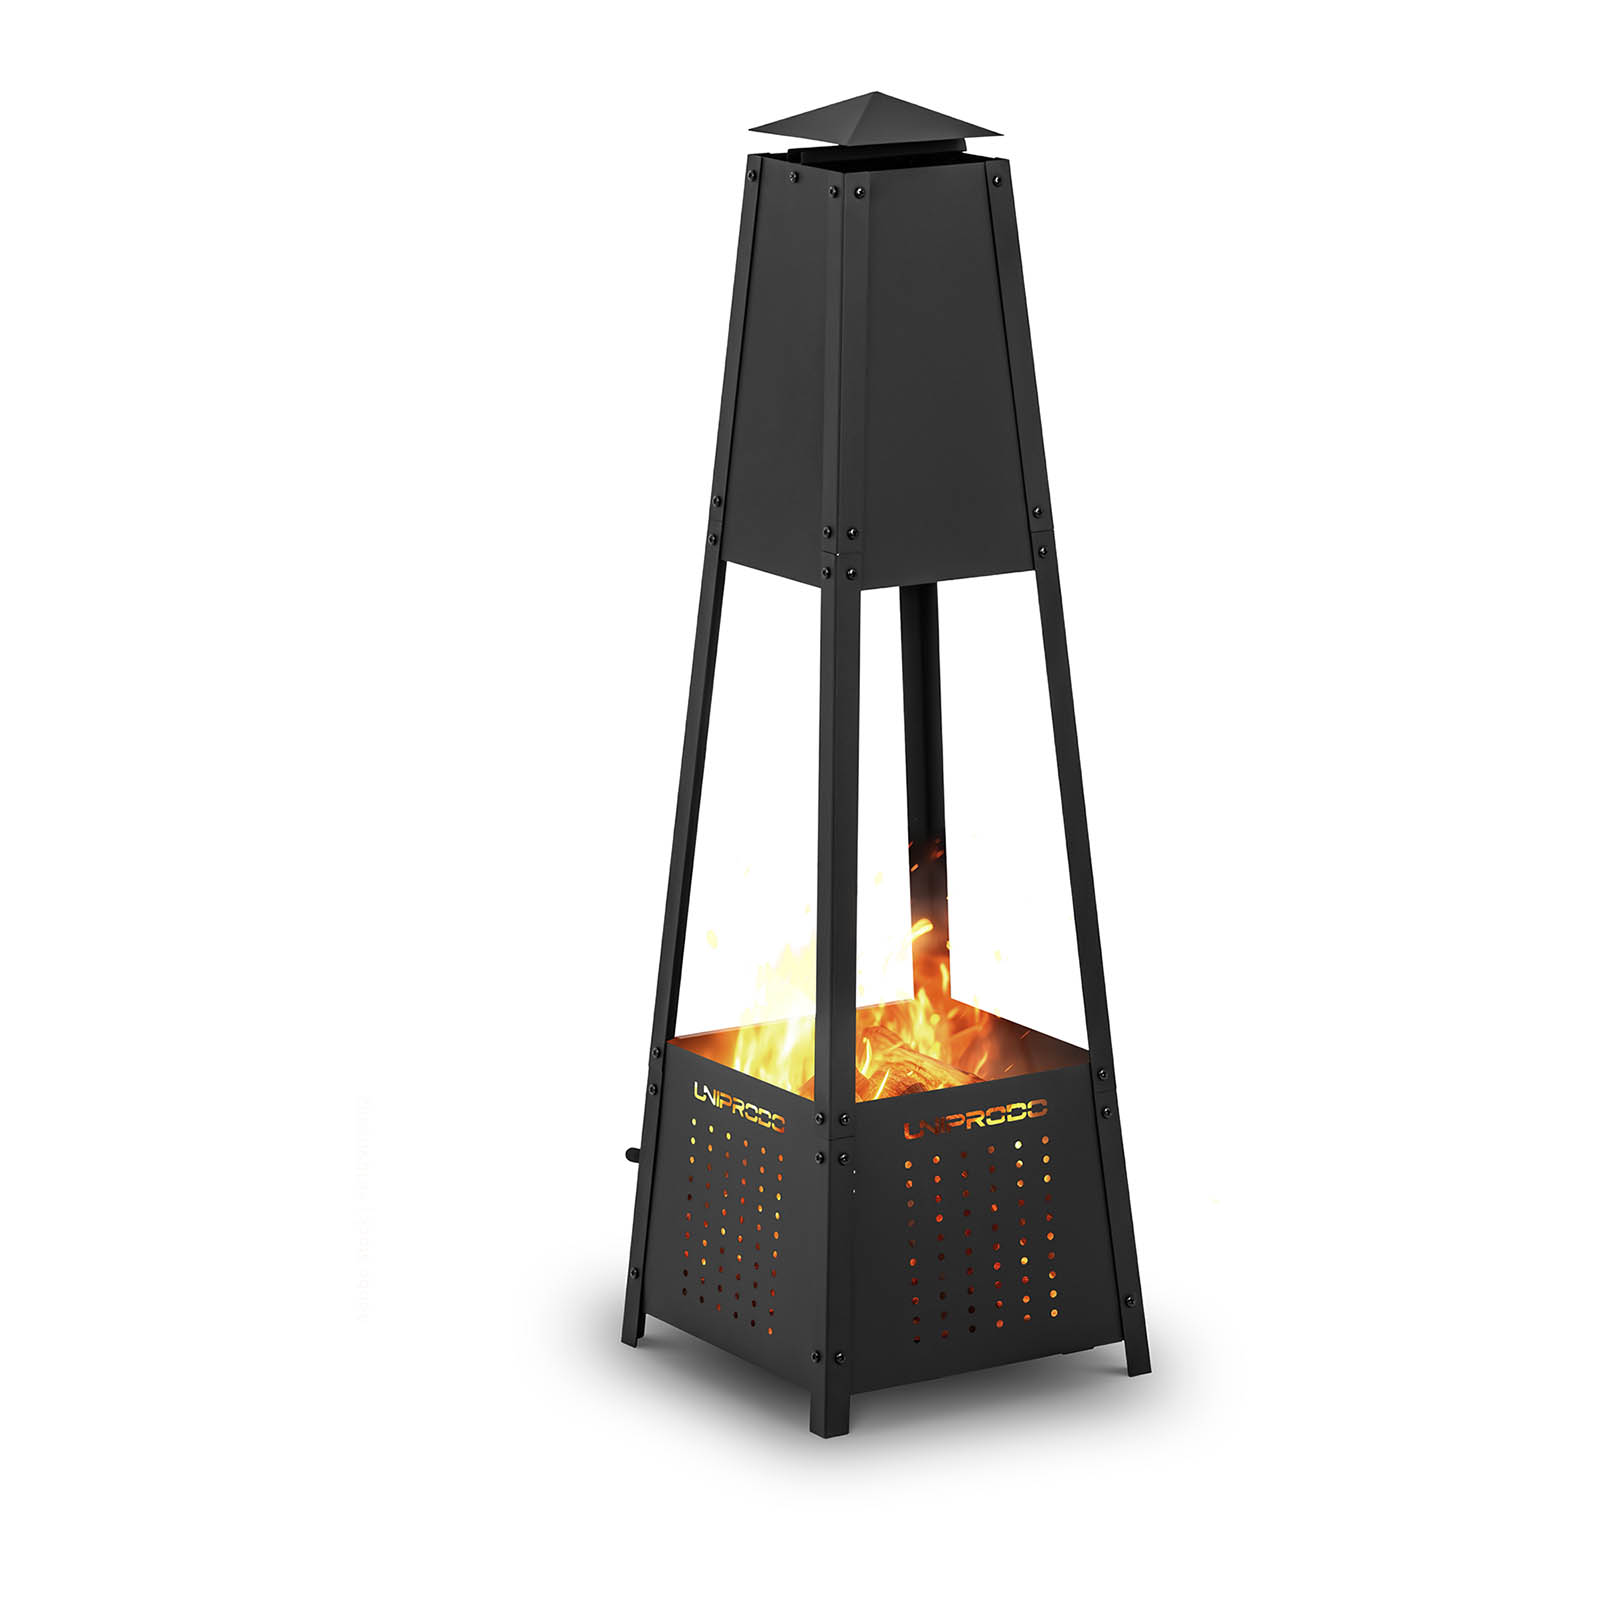 Zdjela za vatru - 30 x 30 x 100 cm - piramidalni dizajn